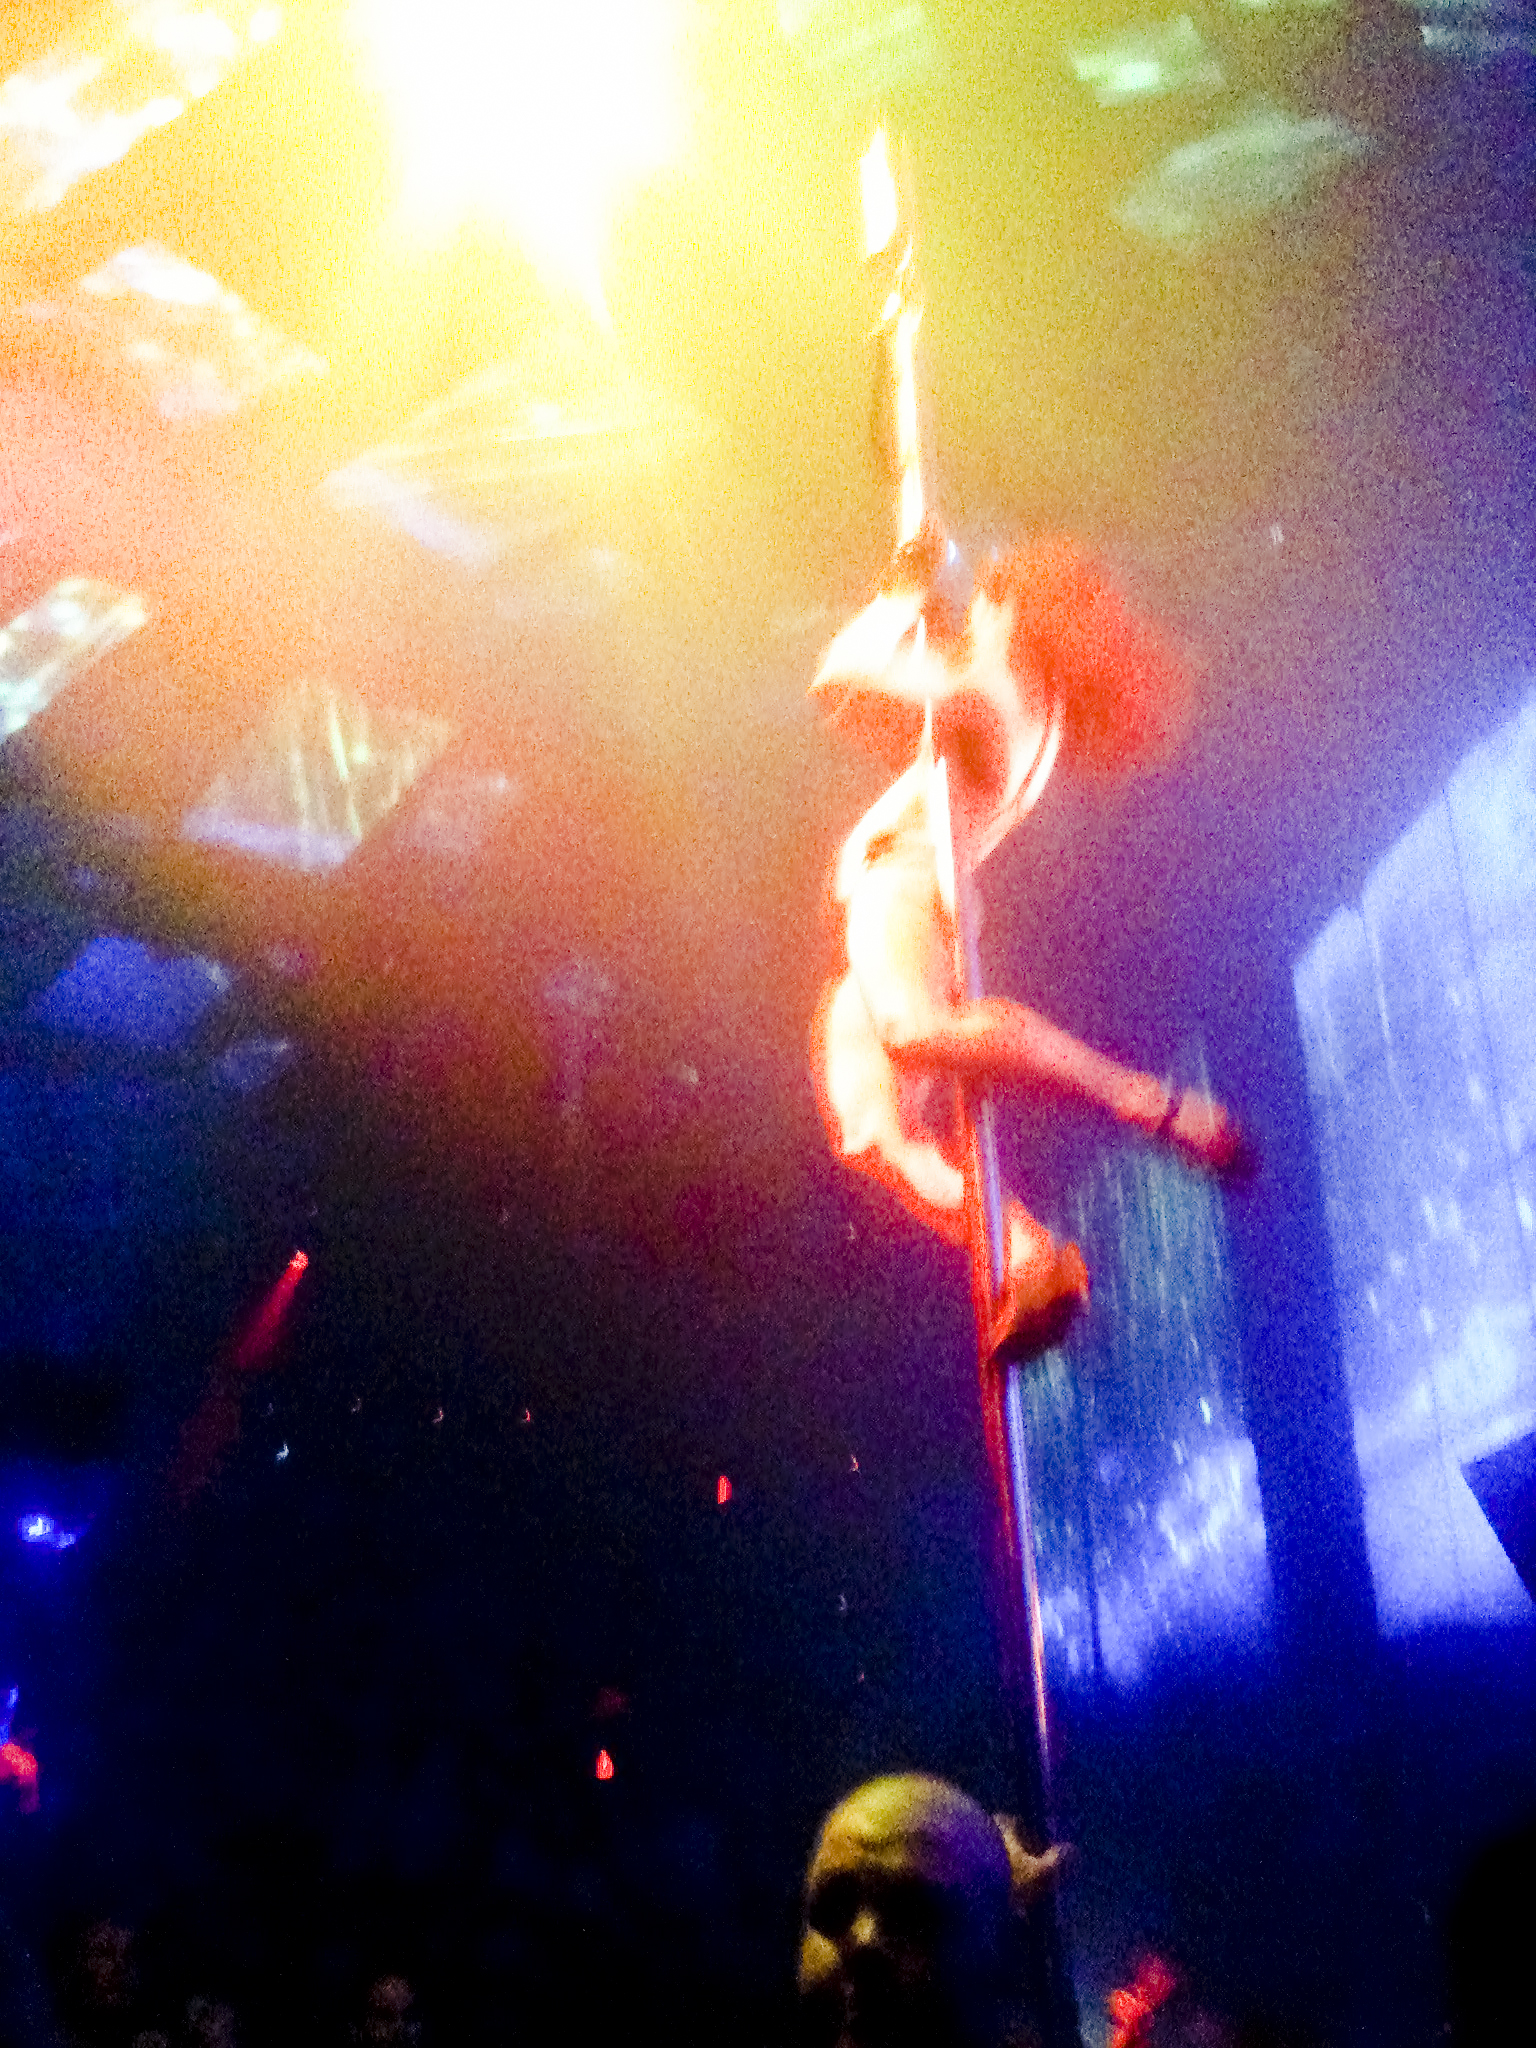 Cirque Du Soleil acrobats above the dancefloor of Light nightclub in Las Vegas.